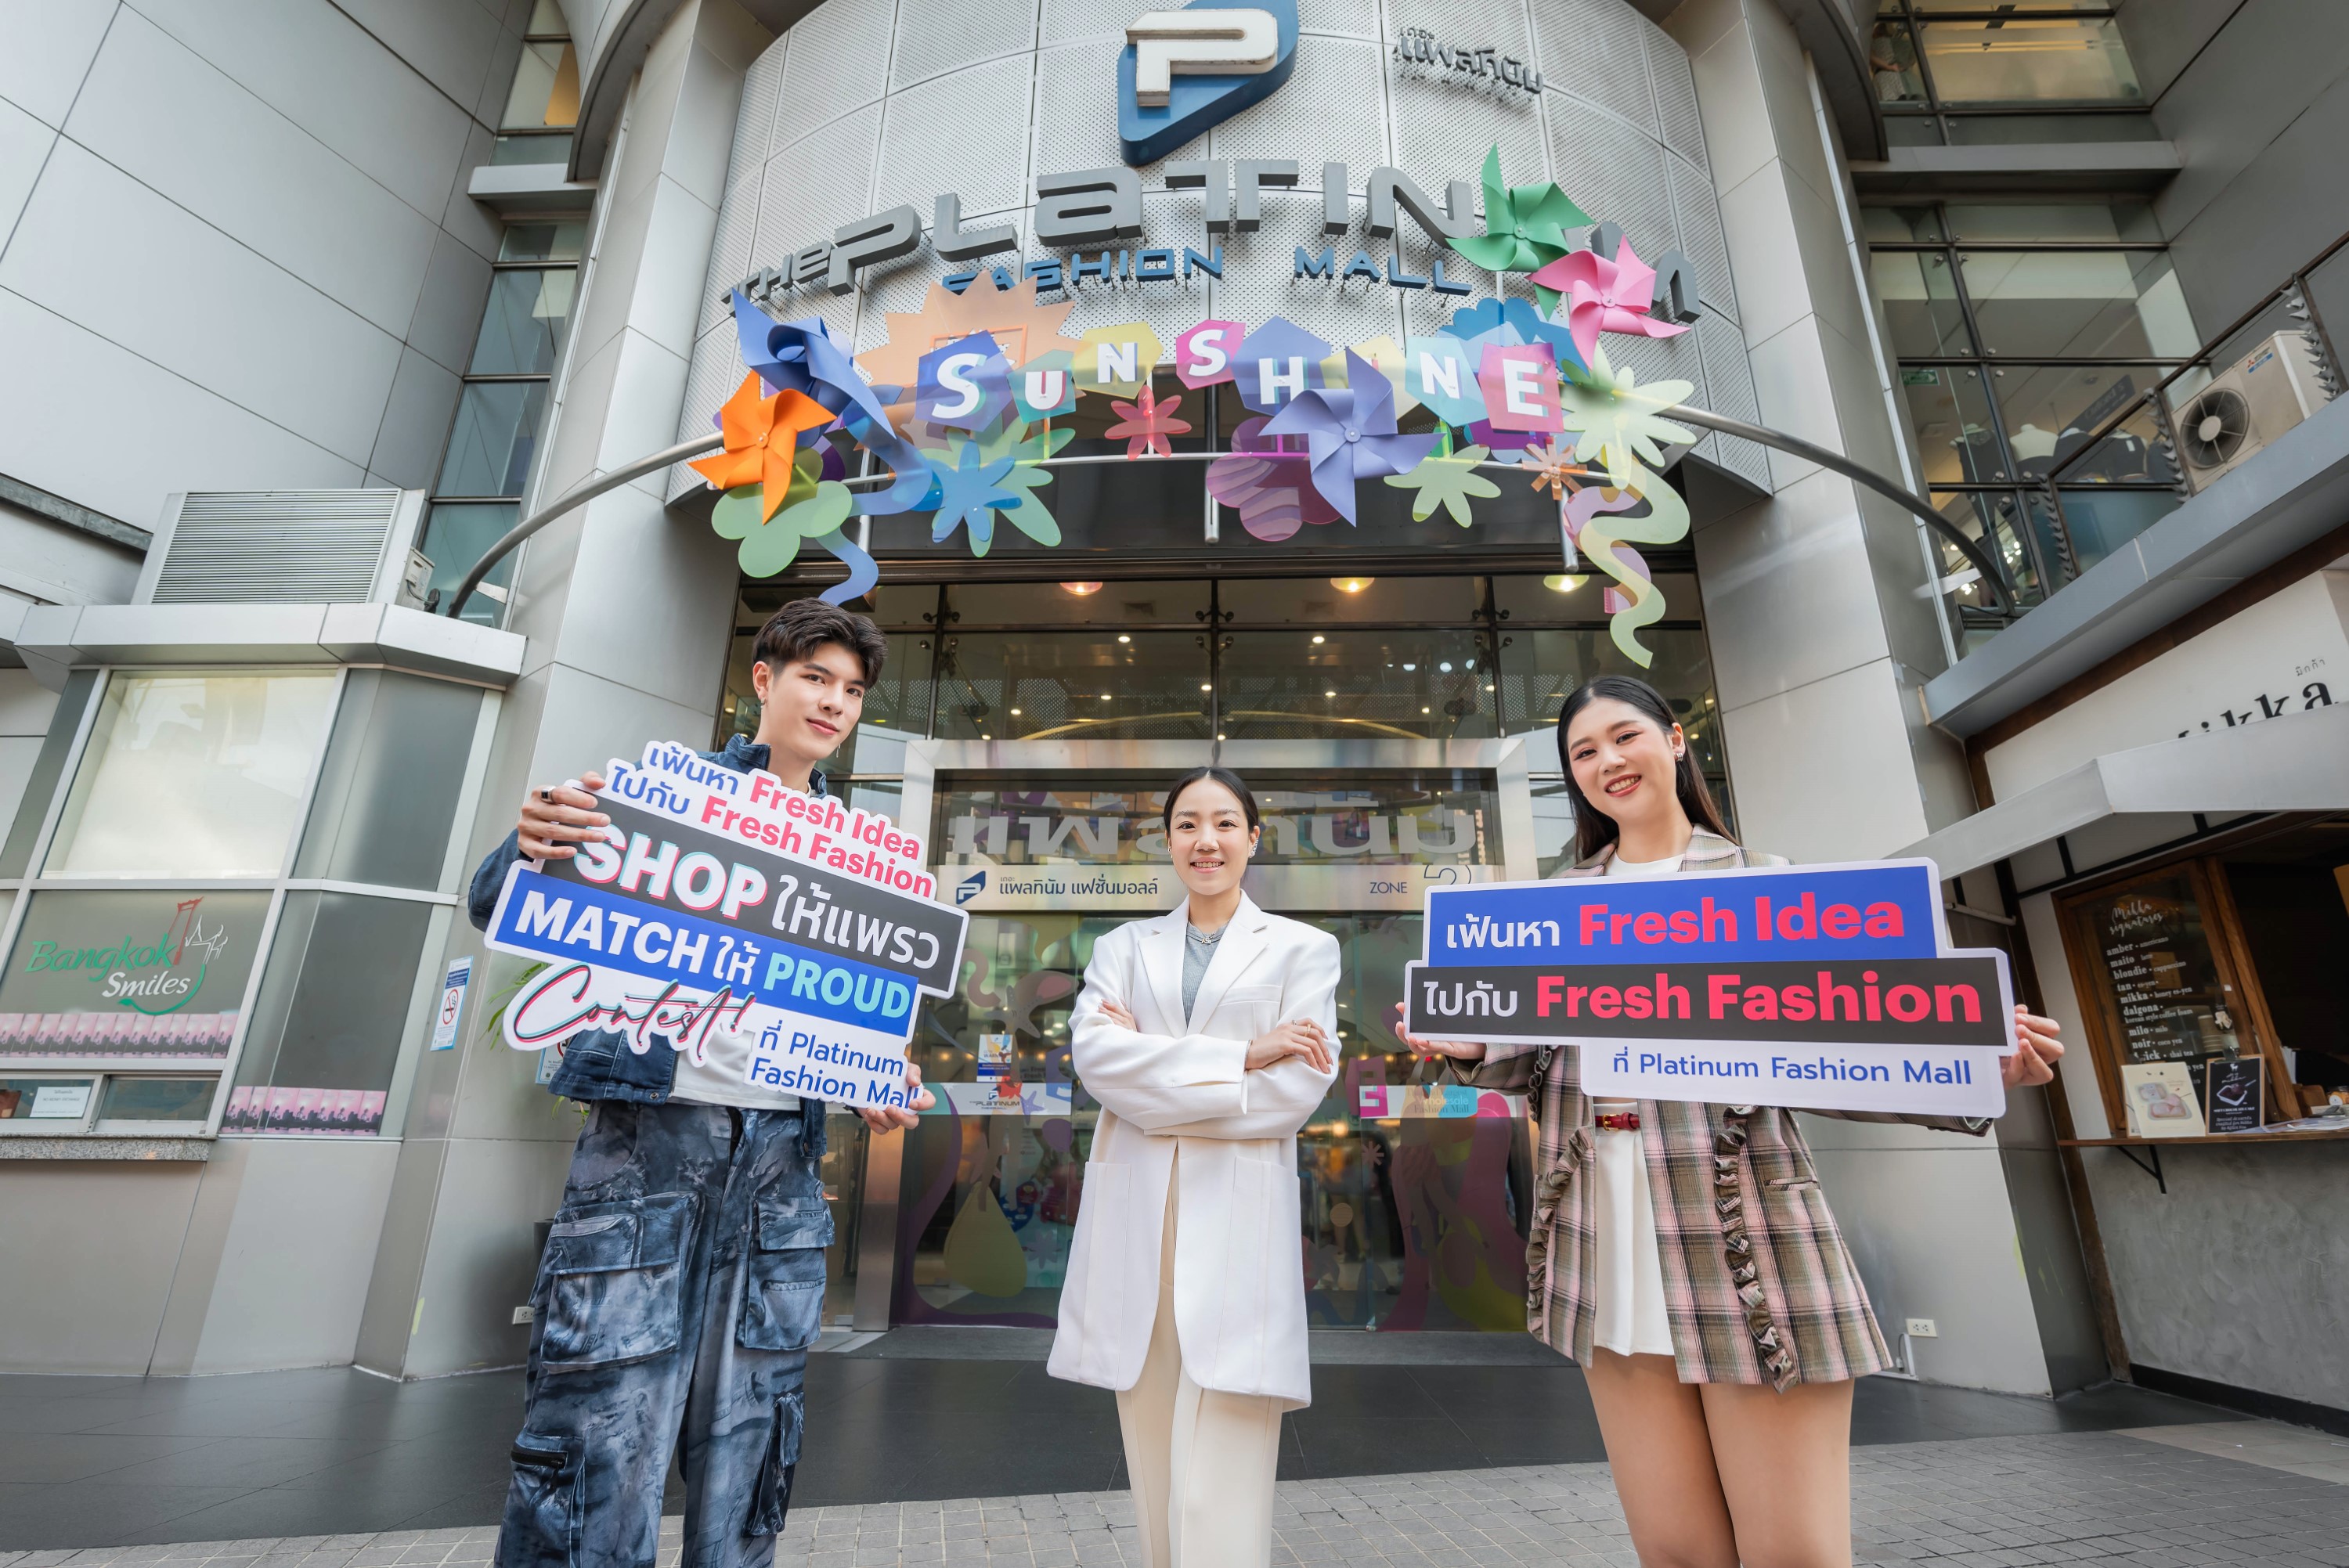 แพลทินัม ชวนมาโชว์ Fresh Idea กับ Fresh Fashion แล้วมา Shop ให้แพรว Match ให้ PROUD ชิงเงินรางวัล พร้อมรุกแผนดึงนักท่องเที่ยวต่างชาติ ปักหมุดชู Soft Power ศูนย์กลางแฟชั่นไทย เผยโฉม SAWASDEE FOODIE HUB แนวคิด “ตลาดน้ำ งานวัด เสน่ห์อาหารไทย” ในไตรมาส 3/2567